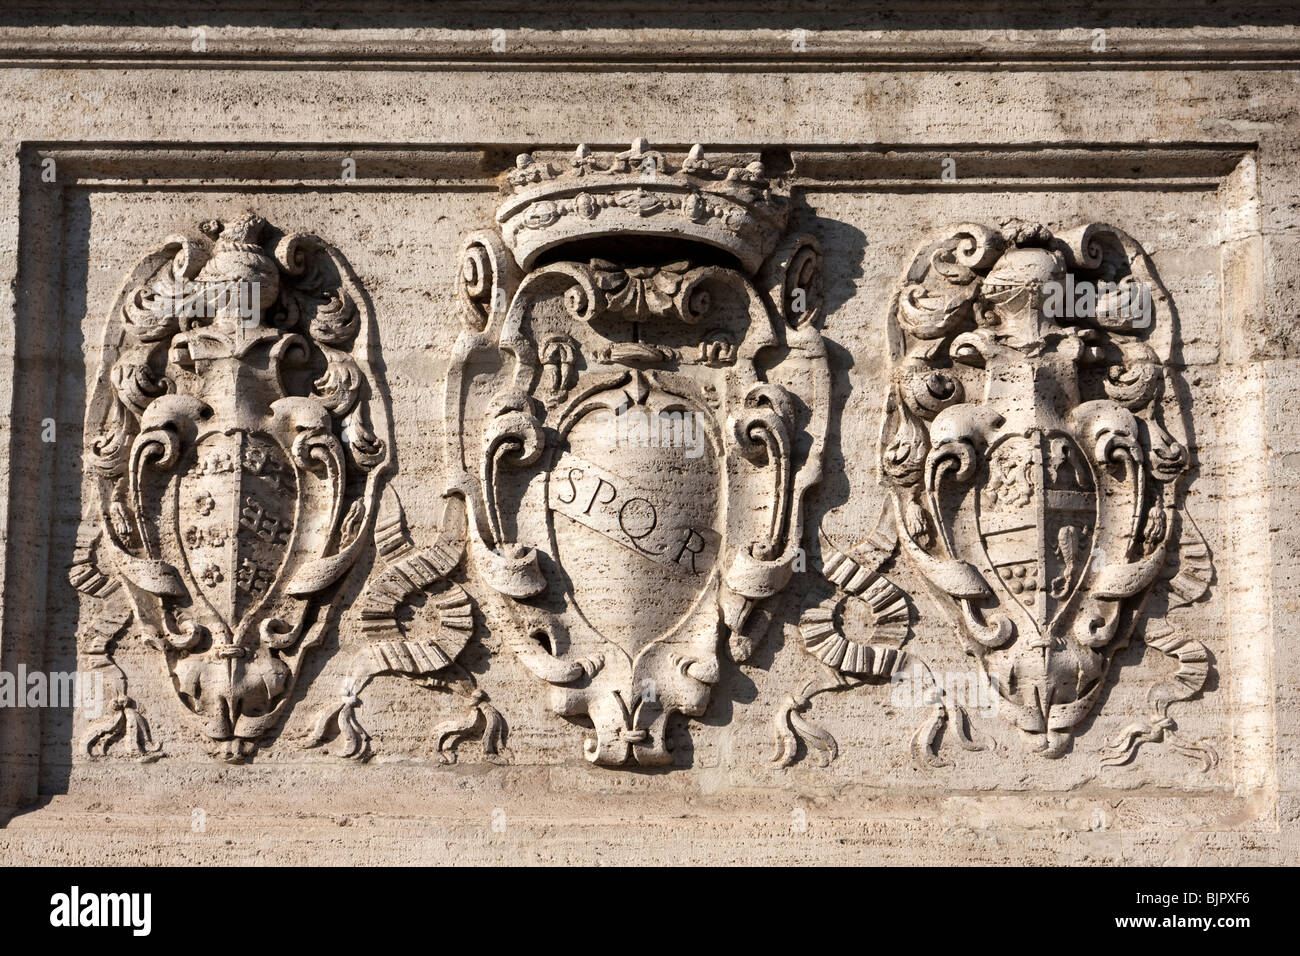 Inscription SPQR initiales de l'expression Senatus Populusque Romanus signifiant le Sénat et le peuple de Rome, Italie Banque D'Images